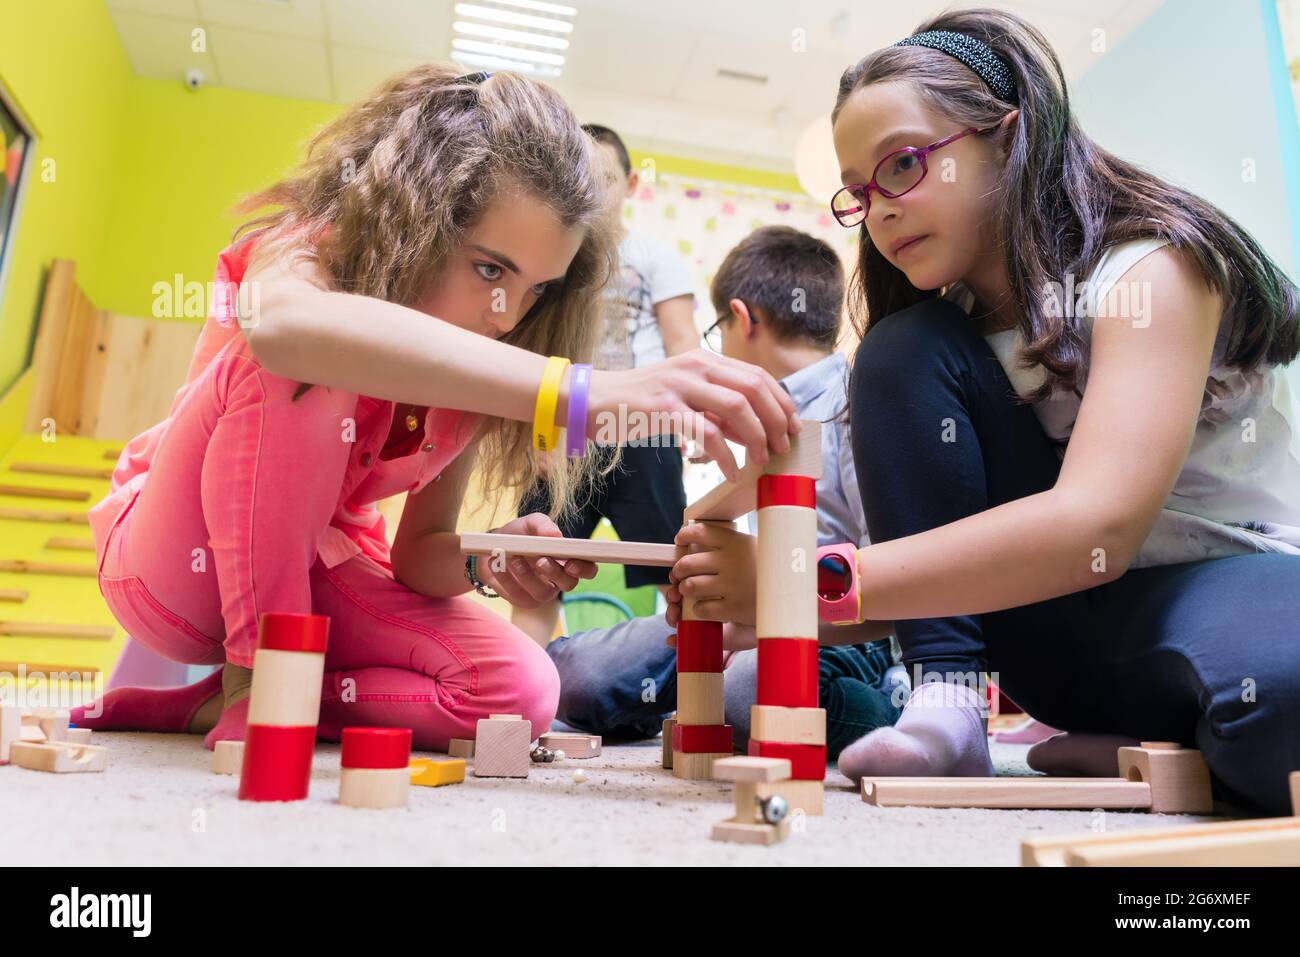 Zwei Pre-school Mädchen zusammen spielen mit Holzspielzeug Bausteine auf dem Boden während der Spielzeit betreut durch eine sorgfältige junge Kindergärtnerin Stockfoto